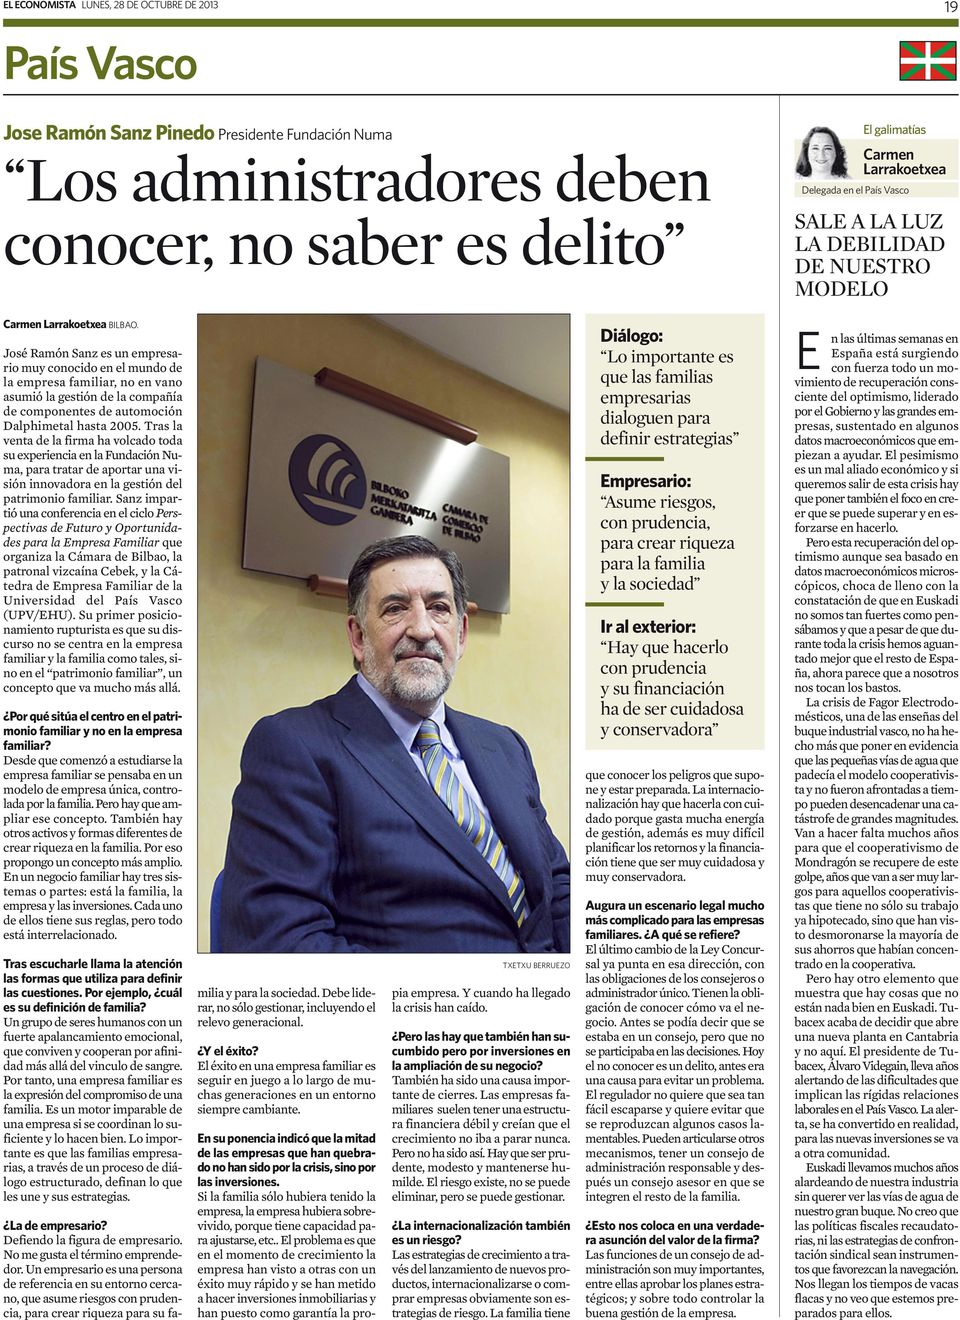 José Ramón Sanz es un empresario muy conocido en el mundo de la empresa familiar, no en vano asumió la gestión de la compañía de componentes de automoción Dalphimetal hasta 2005.